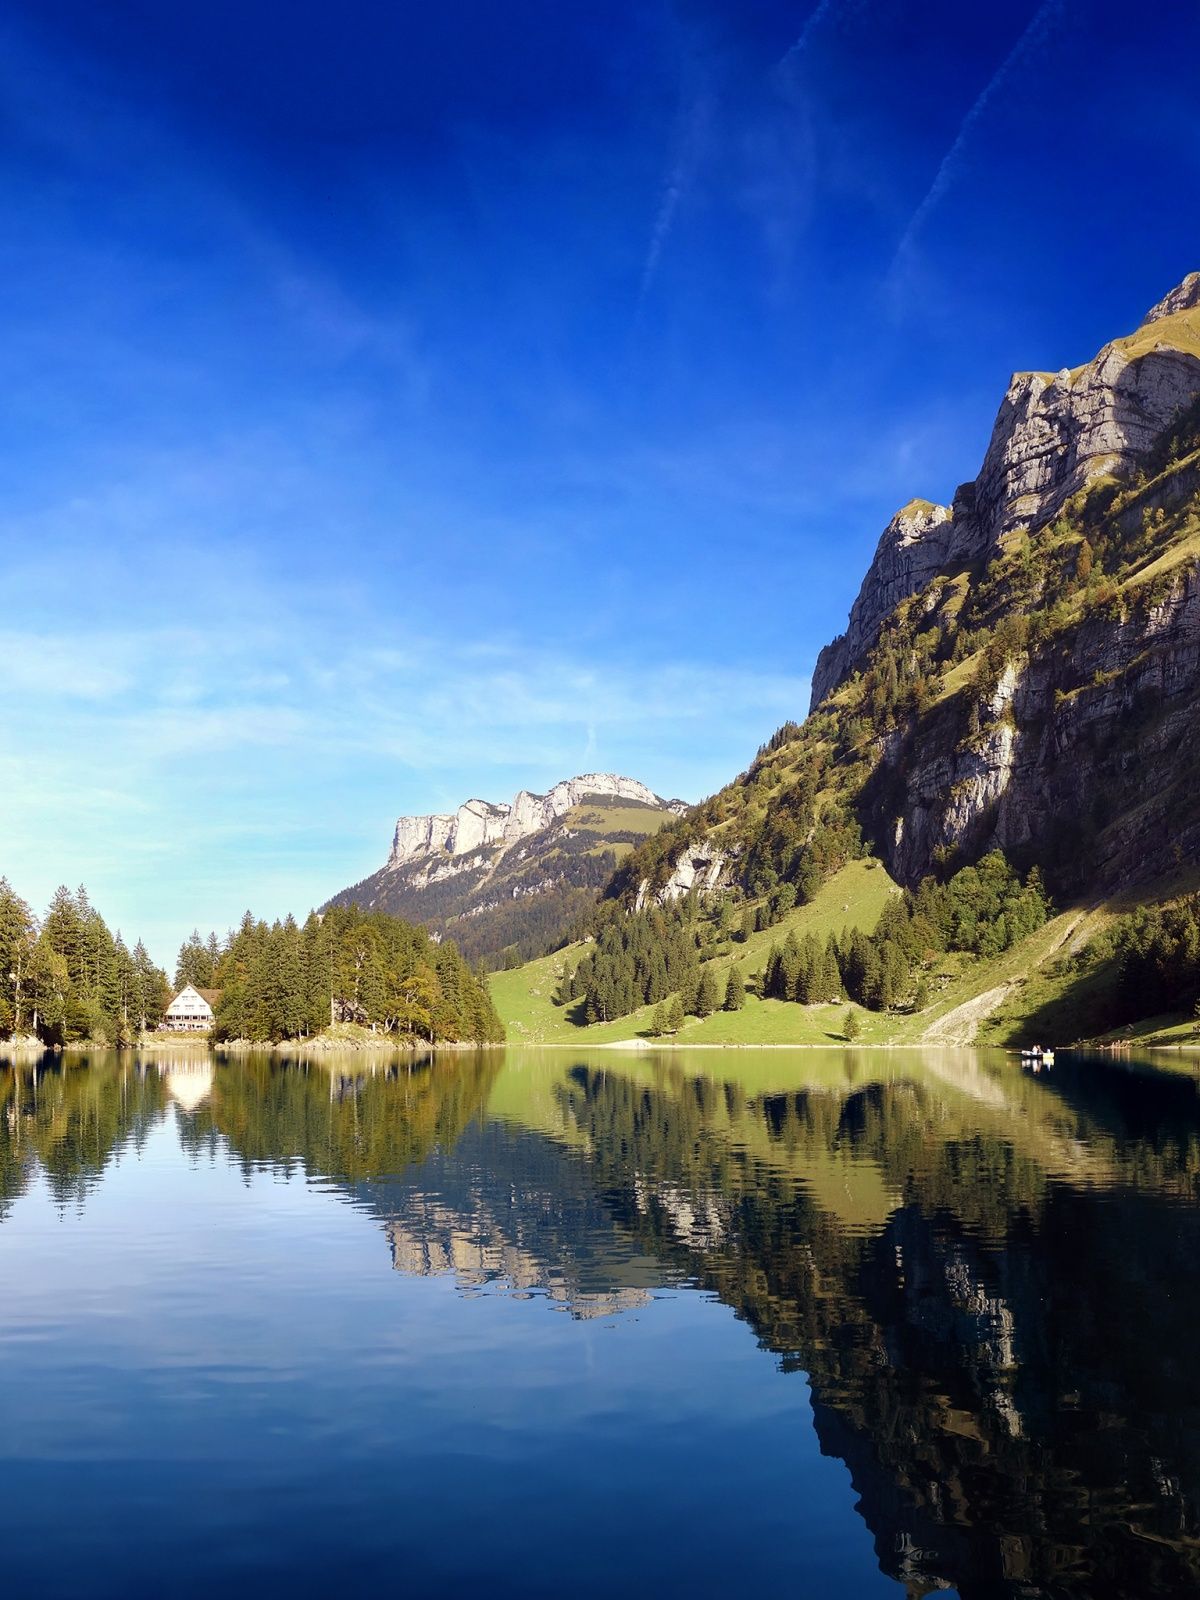 طبیعت بکر کشور سوئیس در یک نمای Full HD بسیار زیبا 